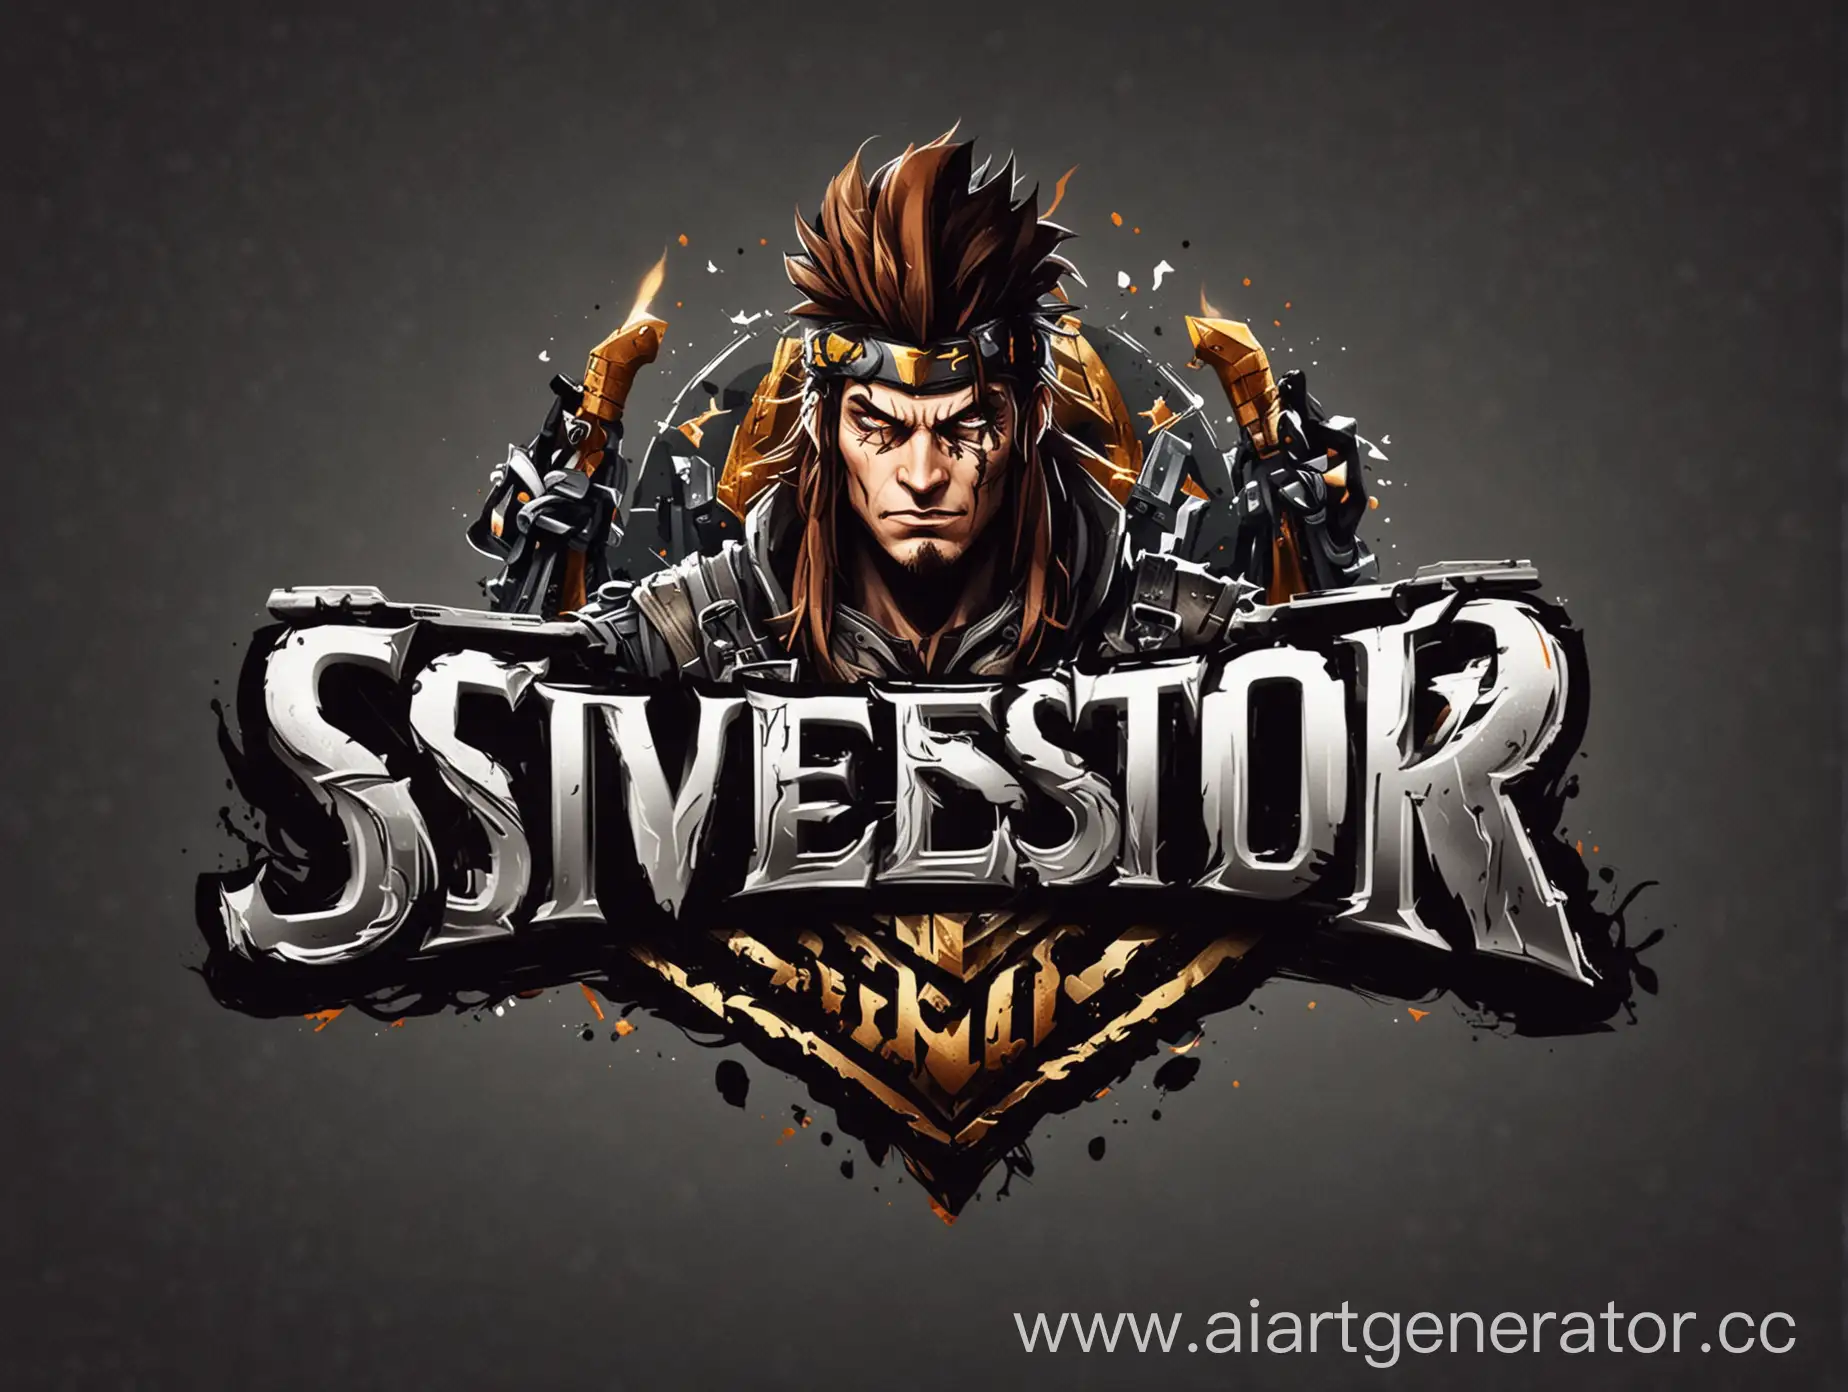 Логотип Silvestor в игровом стиле